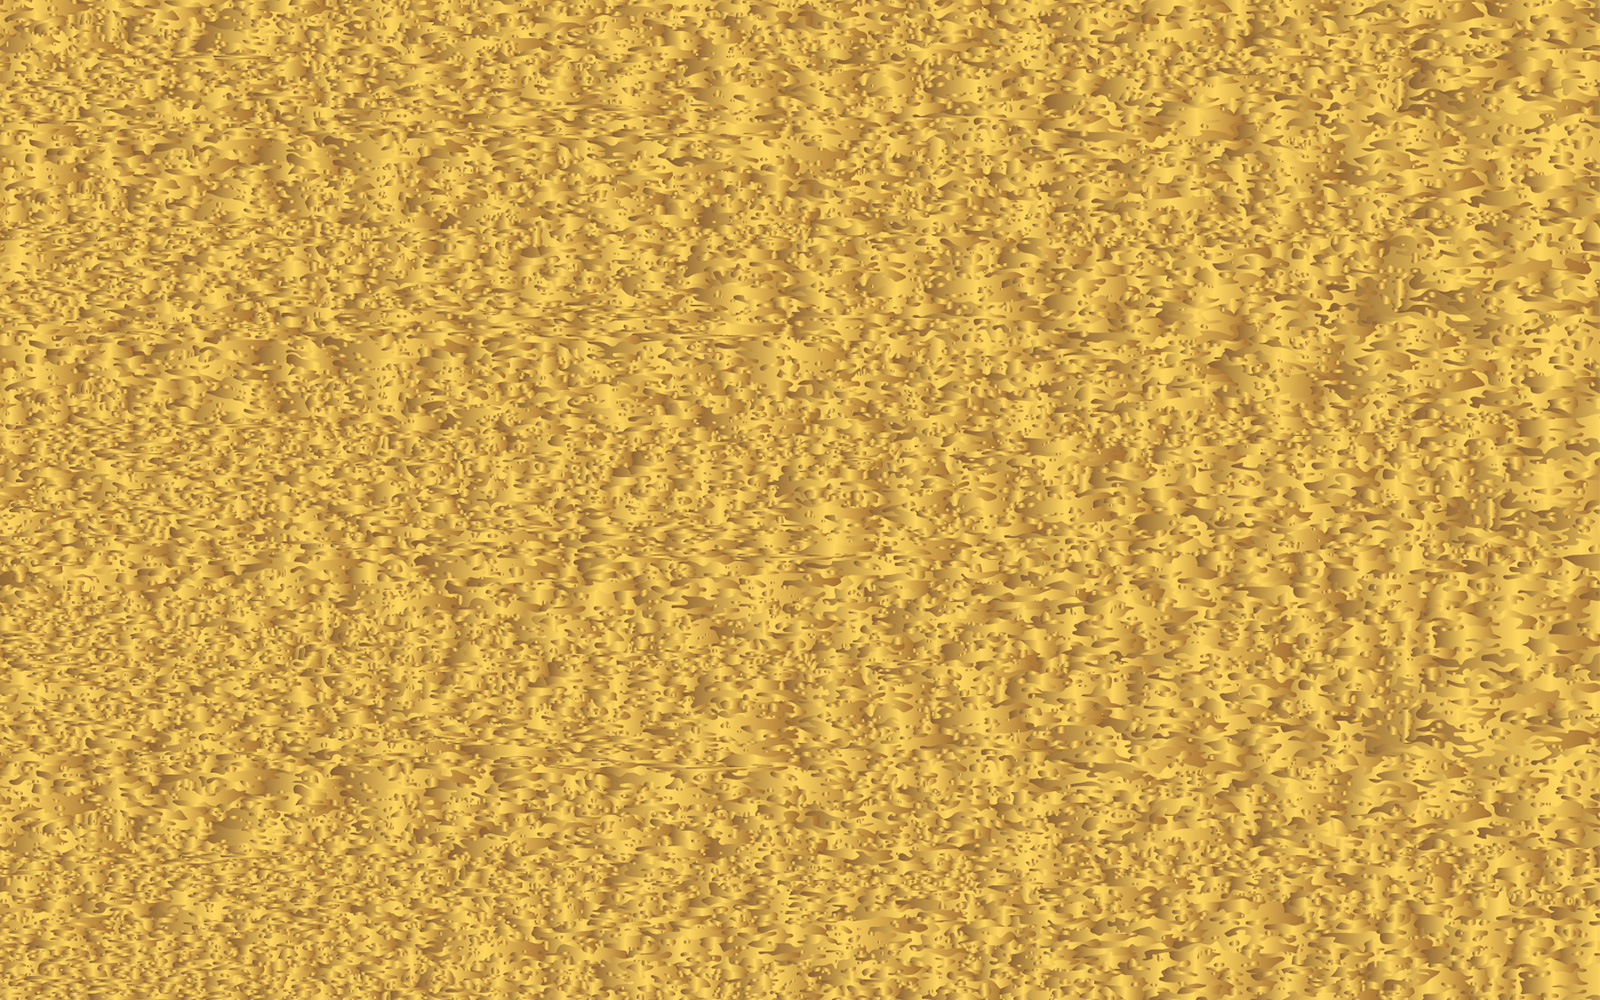 Golden grunge texture background